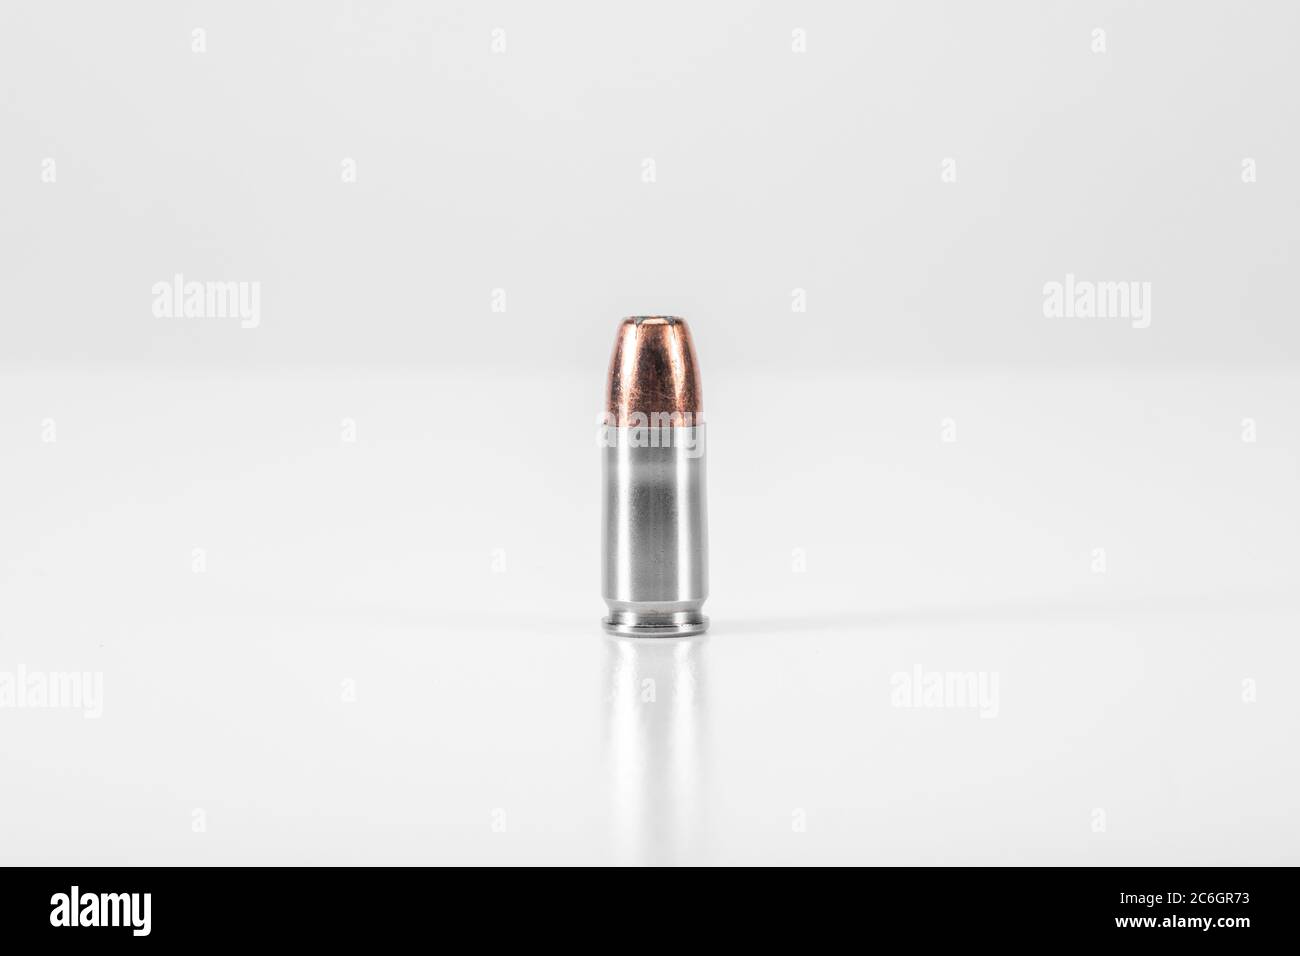 9mm Round of Ammunition on White Background Stock Photo